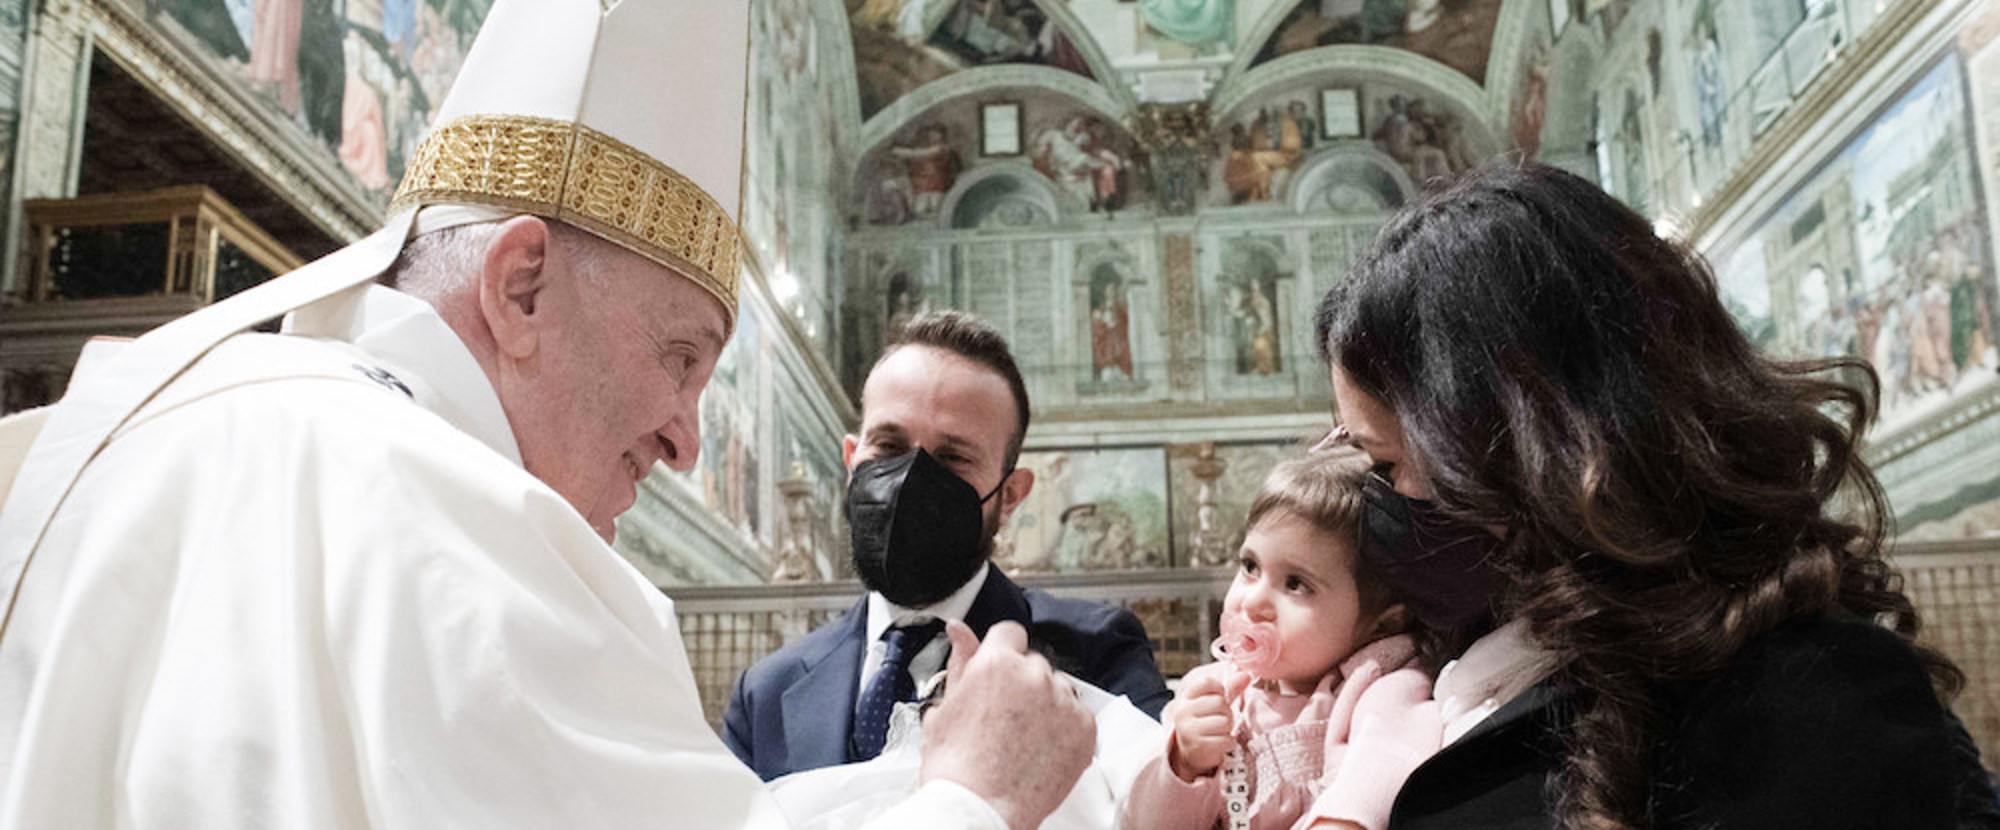 Papst Franziskus begrüßt Eltern mit ihrem Kind zum Fest der 'Taufe des Herrn' am 9. Januar 2022 in der Sixtinischen Kapelle im Vatikan.